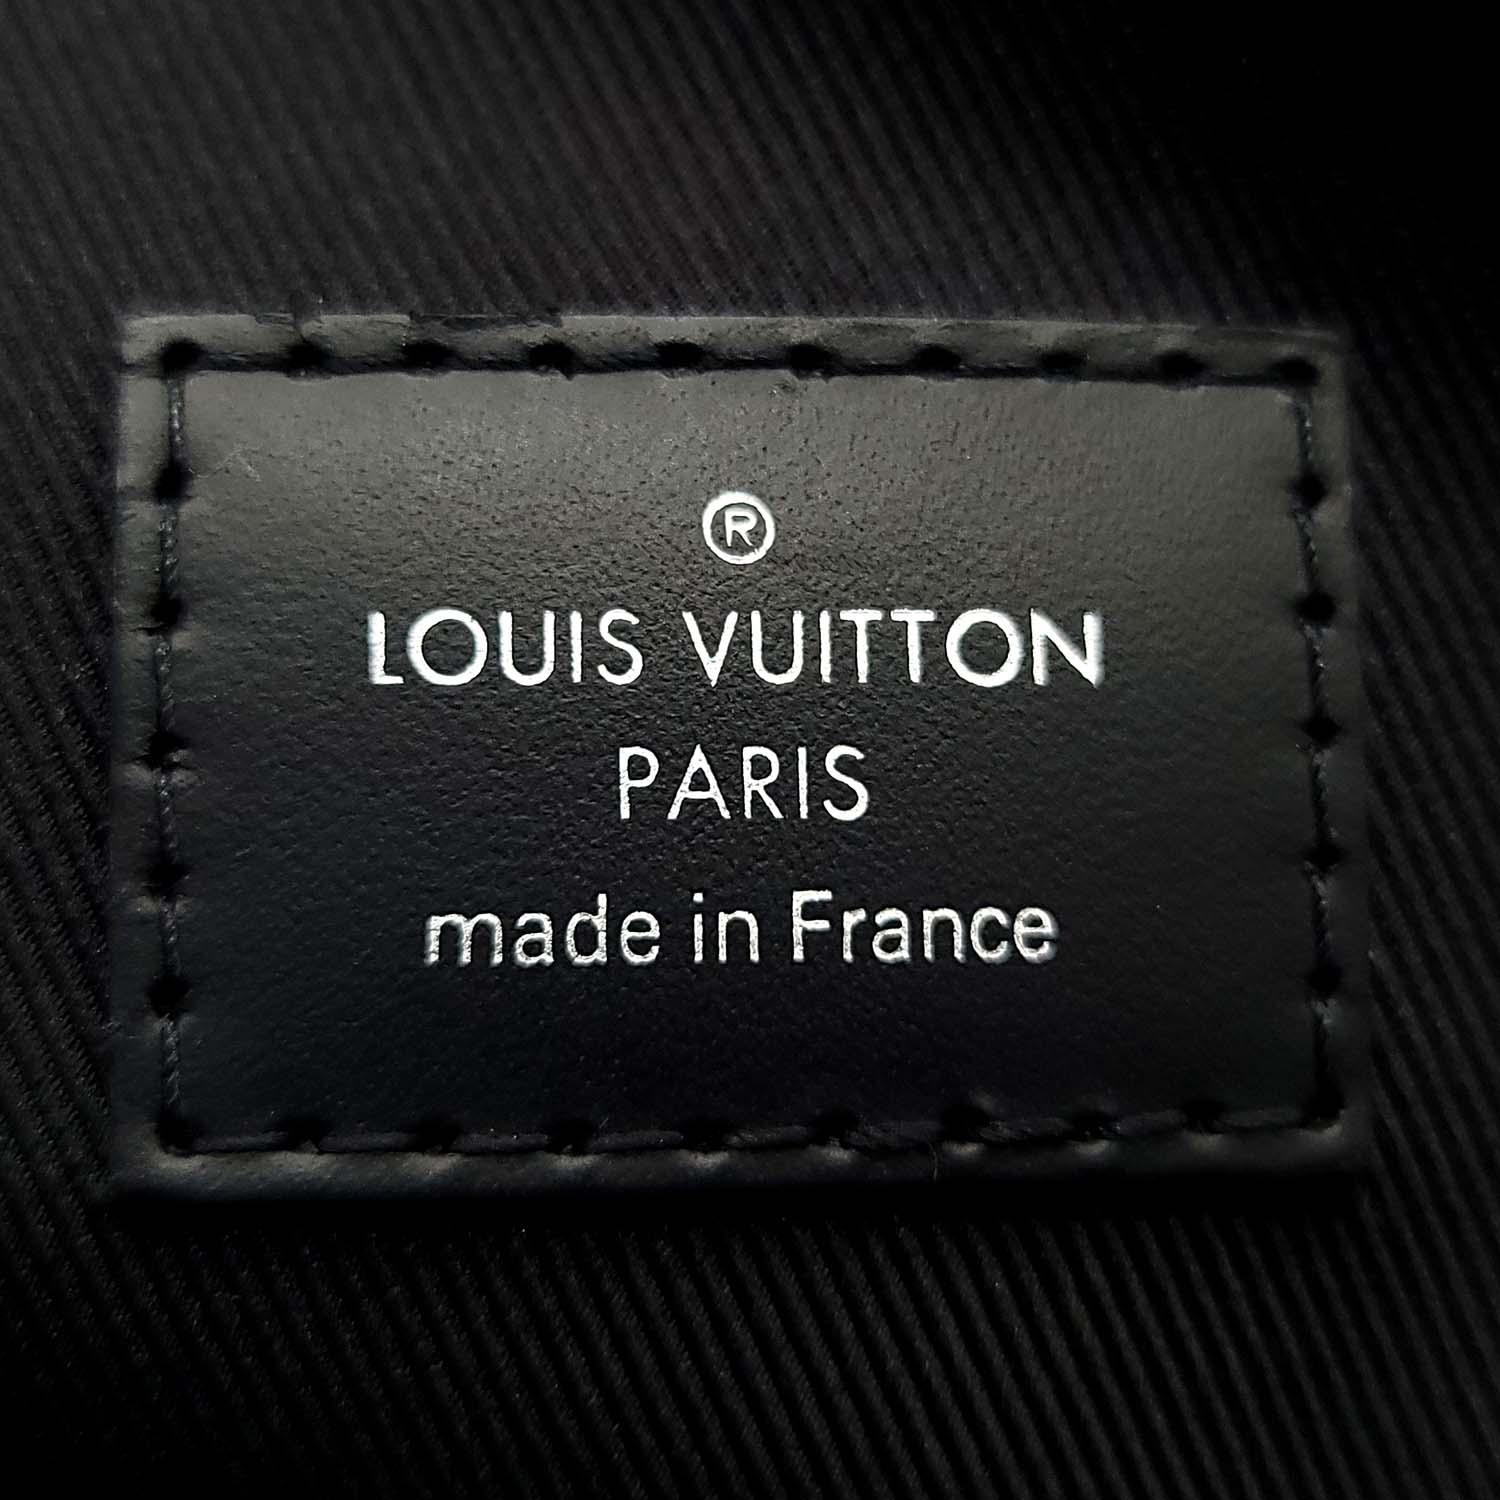 Authentic LOUIS VUITTON Damier Graphite pouch N60417 pouch  #260-003-980-6130